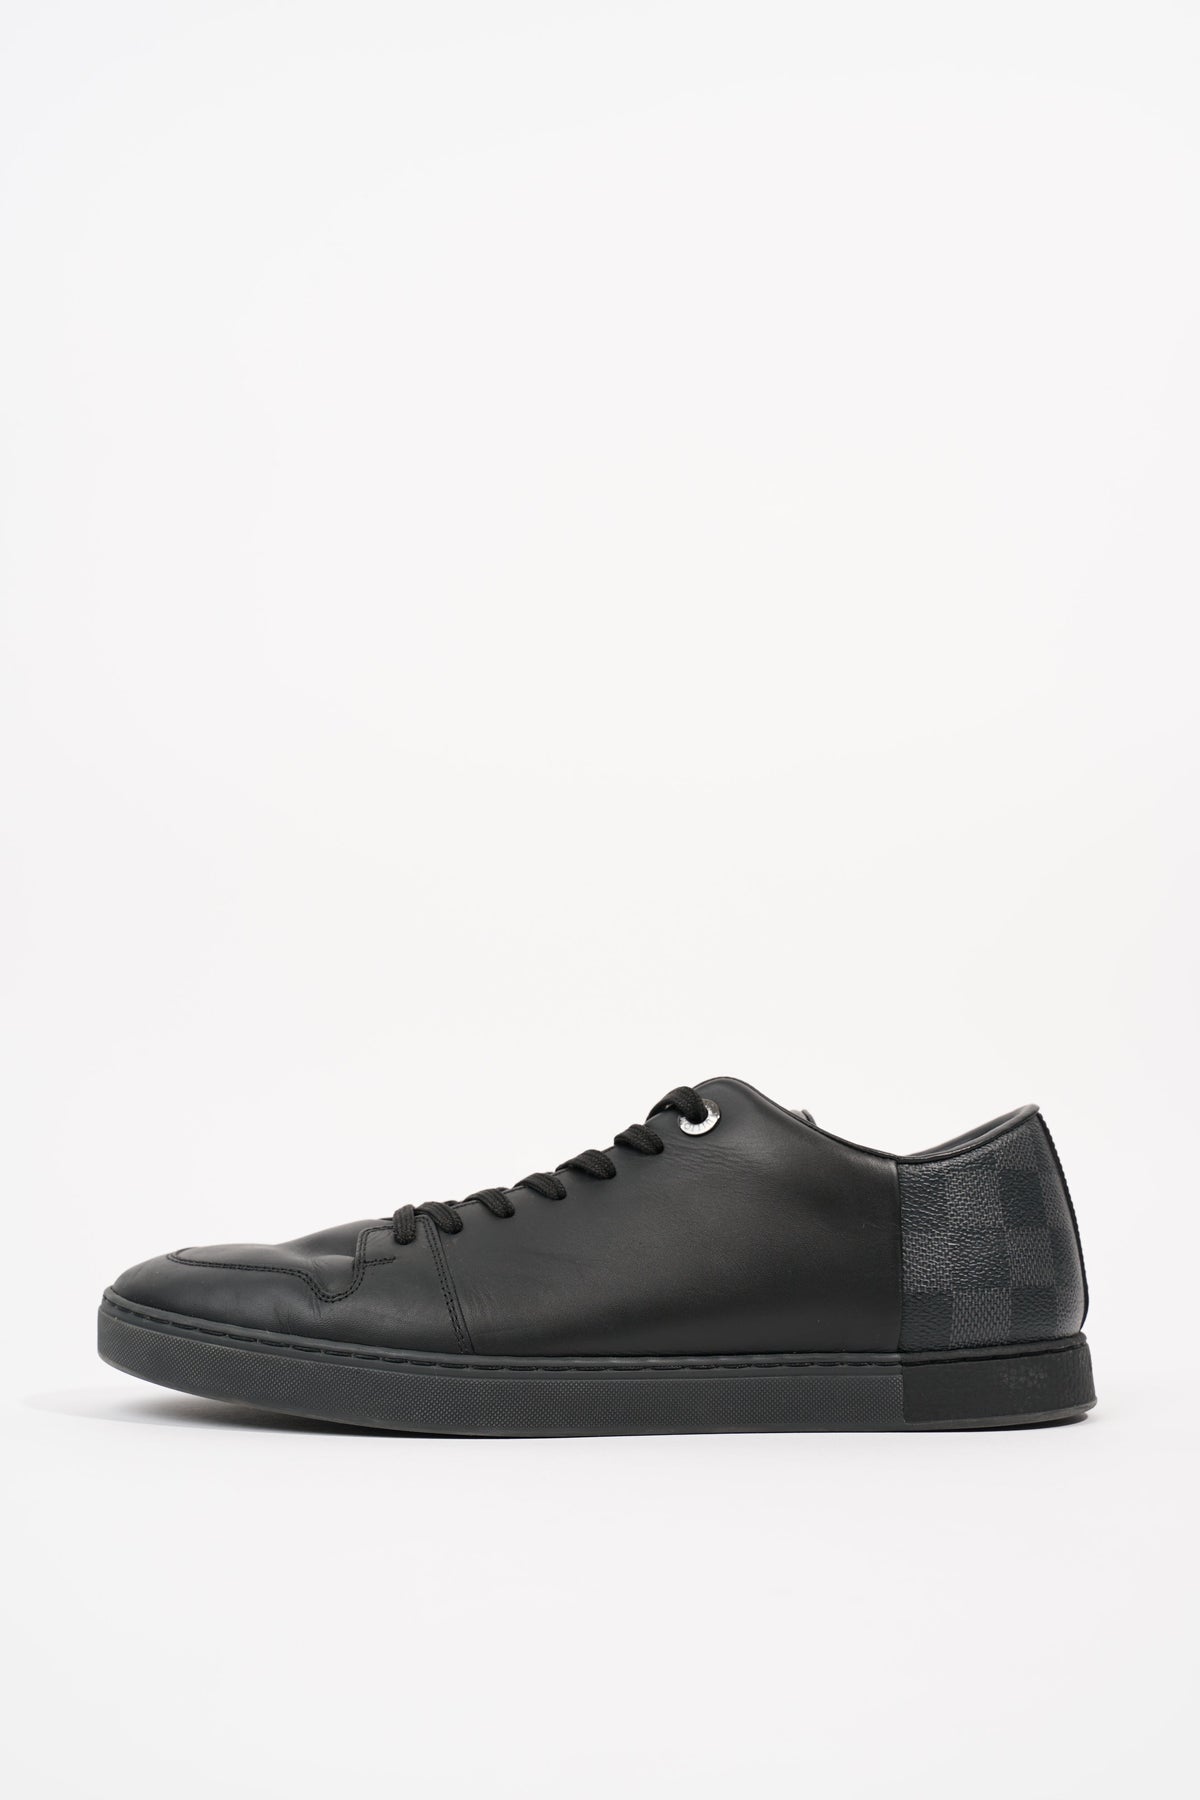 Louis Vuitton, Shoes, Louis Vuitton Damier Sneakers